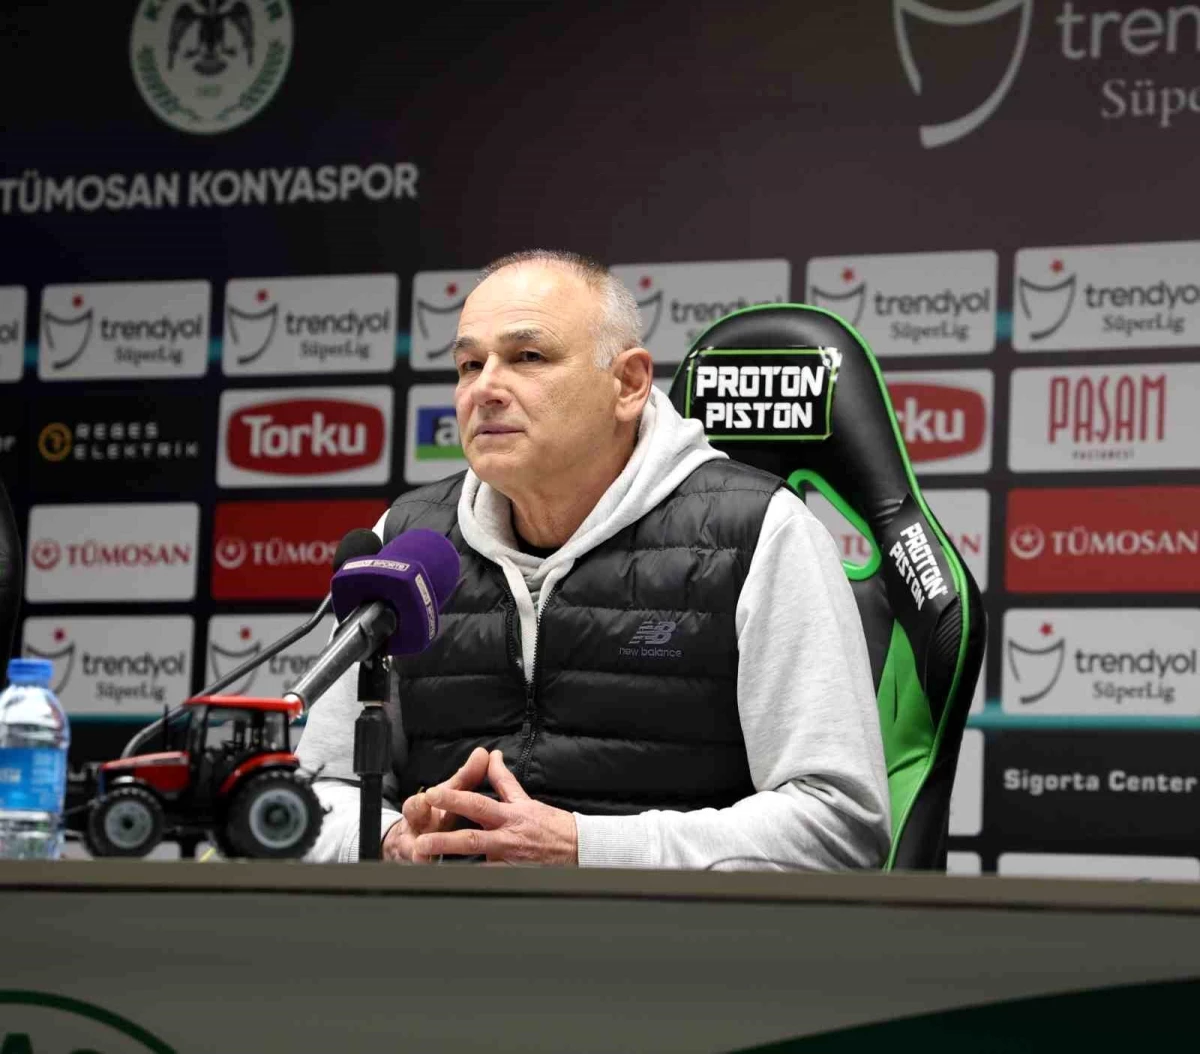 Konyaspor, Teknik Direktör Fahrudin Omerovic ile Yollarını Ayırdı